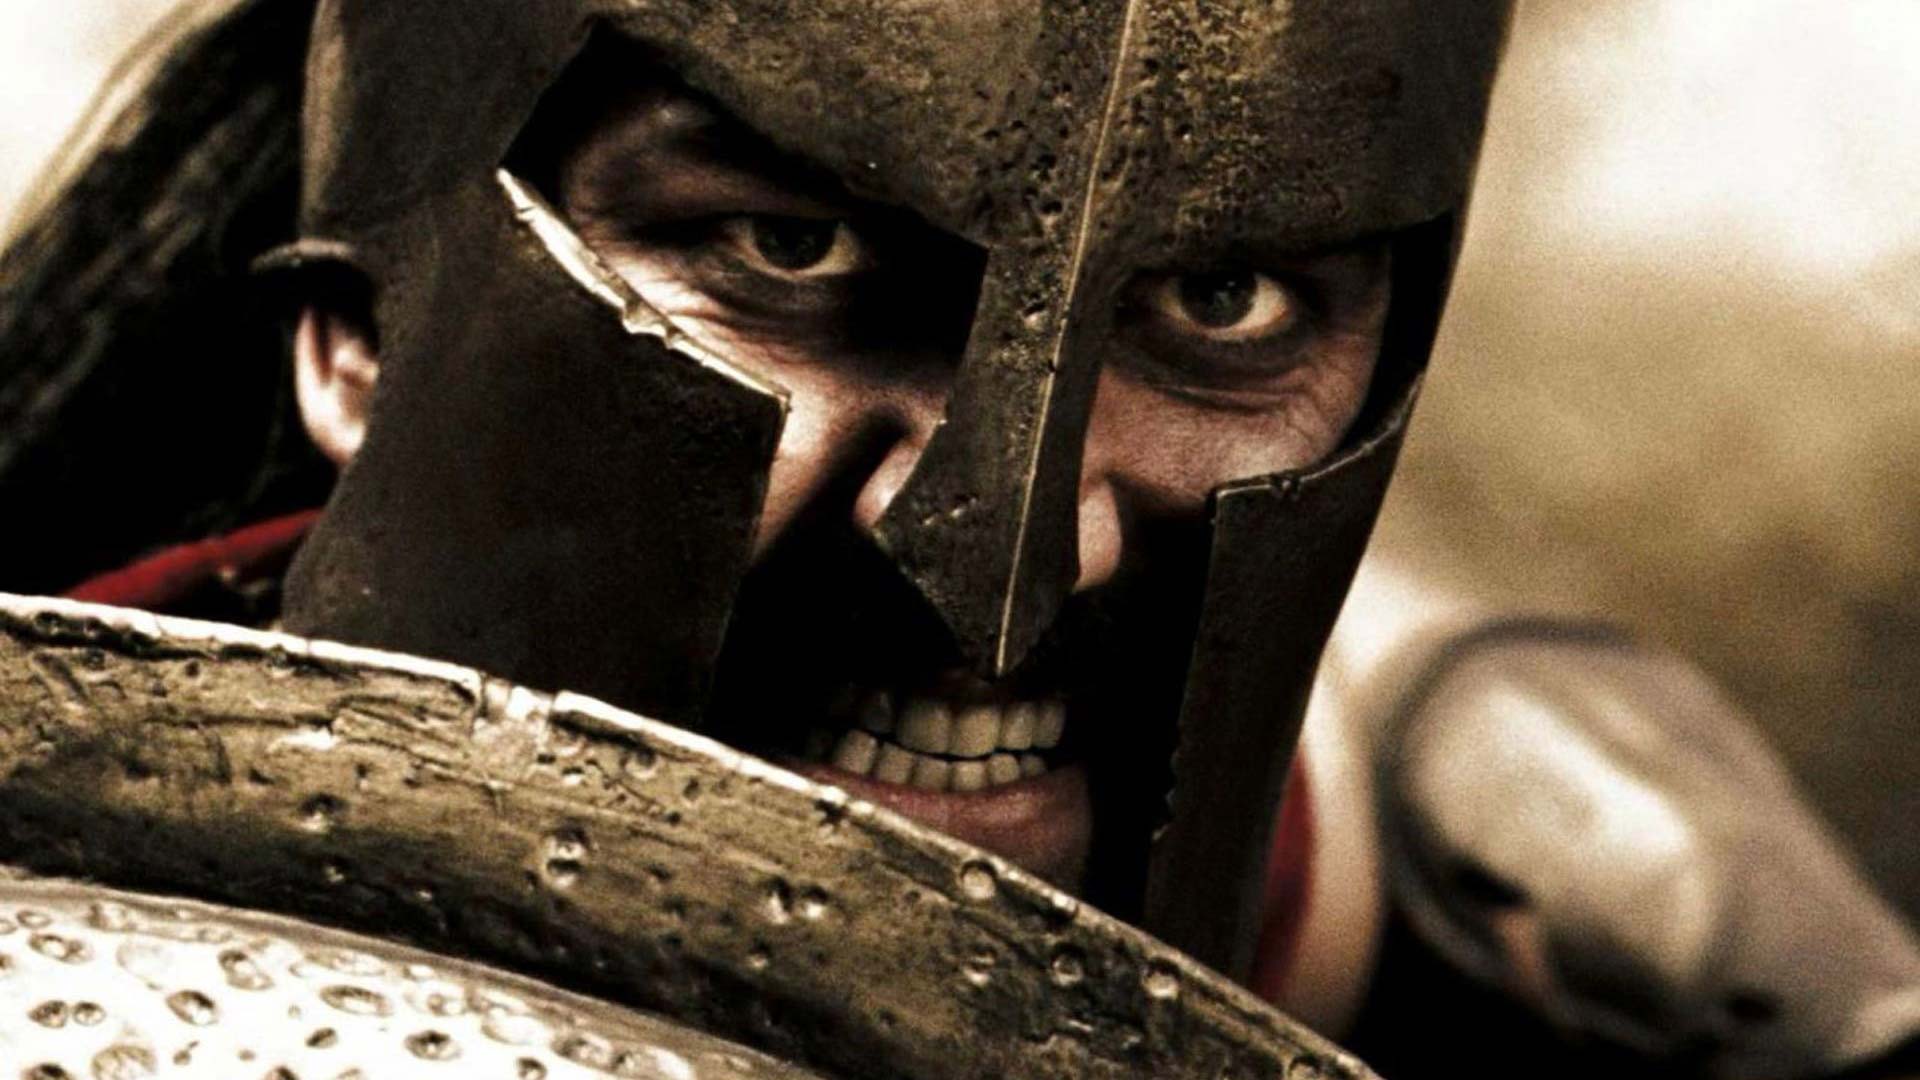 King Leonidas 300 Movie Wallpaper. Spartan warrior, 300 movie